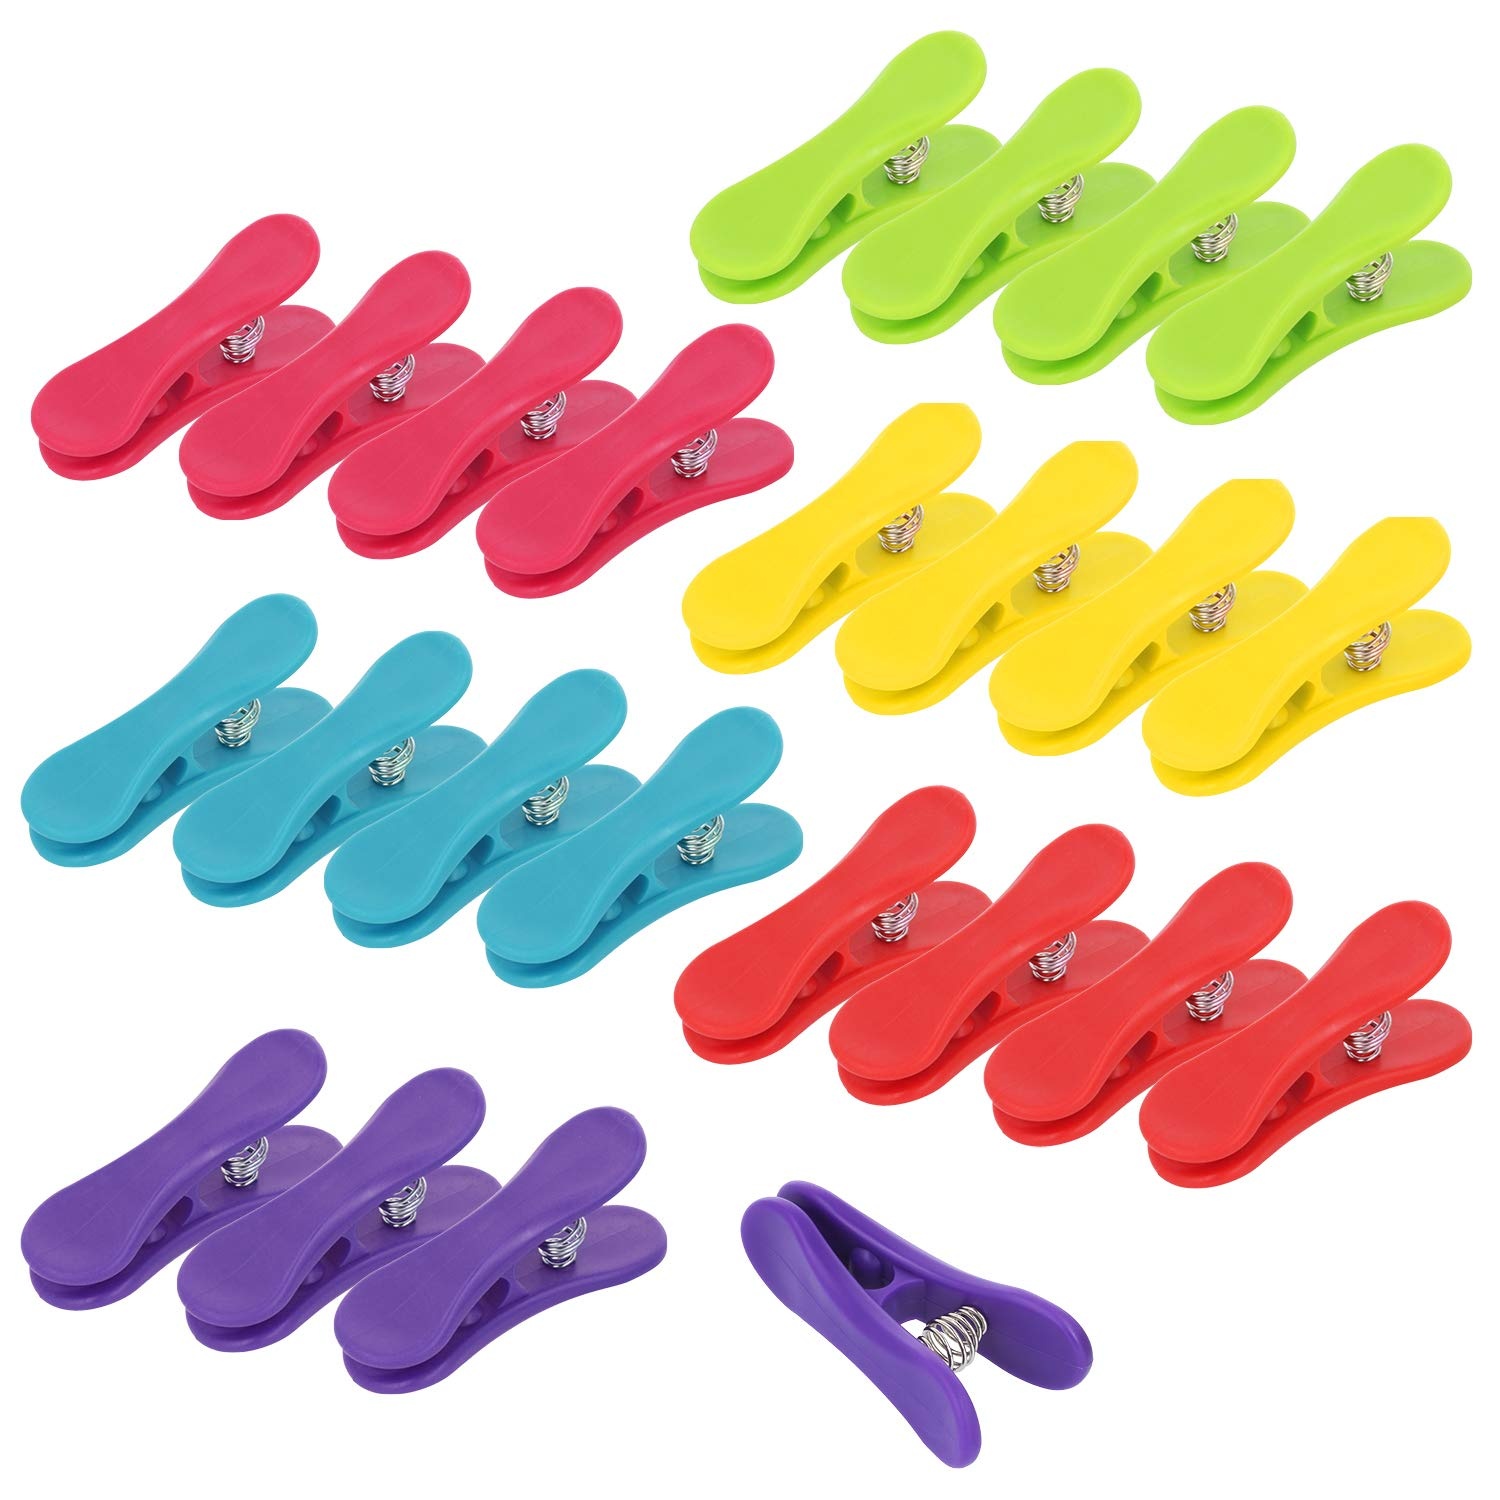 com-four® 24x Verschlussclips für Beutel - Verschlussklemmen aus Kunststoff - Tüten Clips zum Verschließen und Frischhalten (24 Stück - 6 Farben)